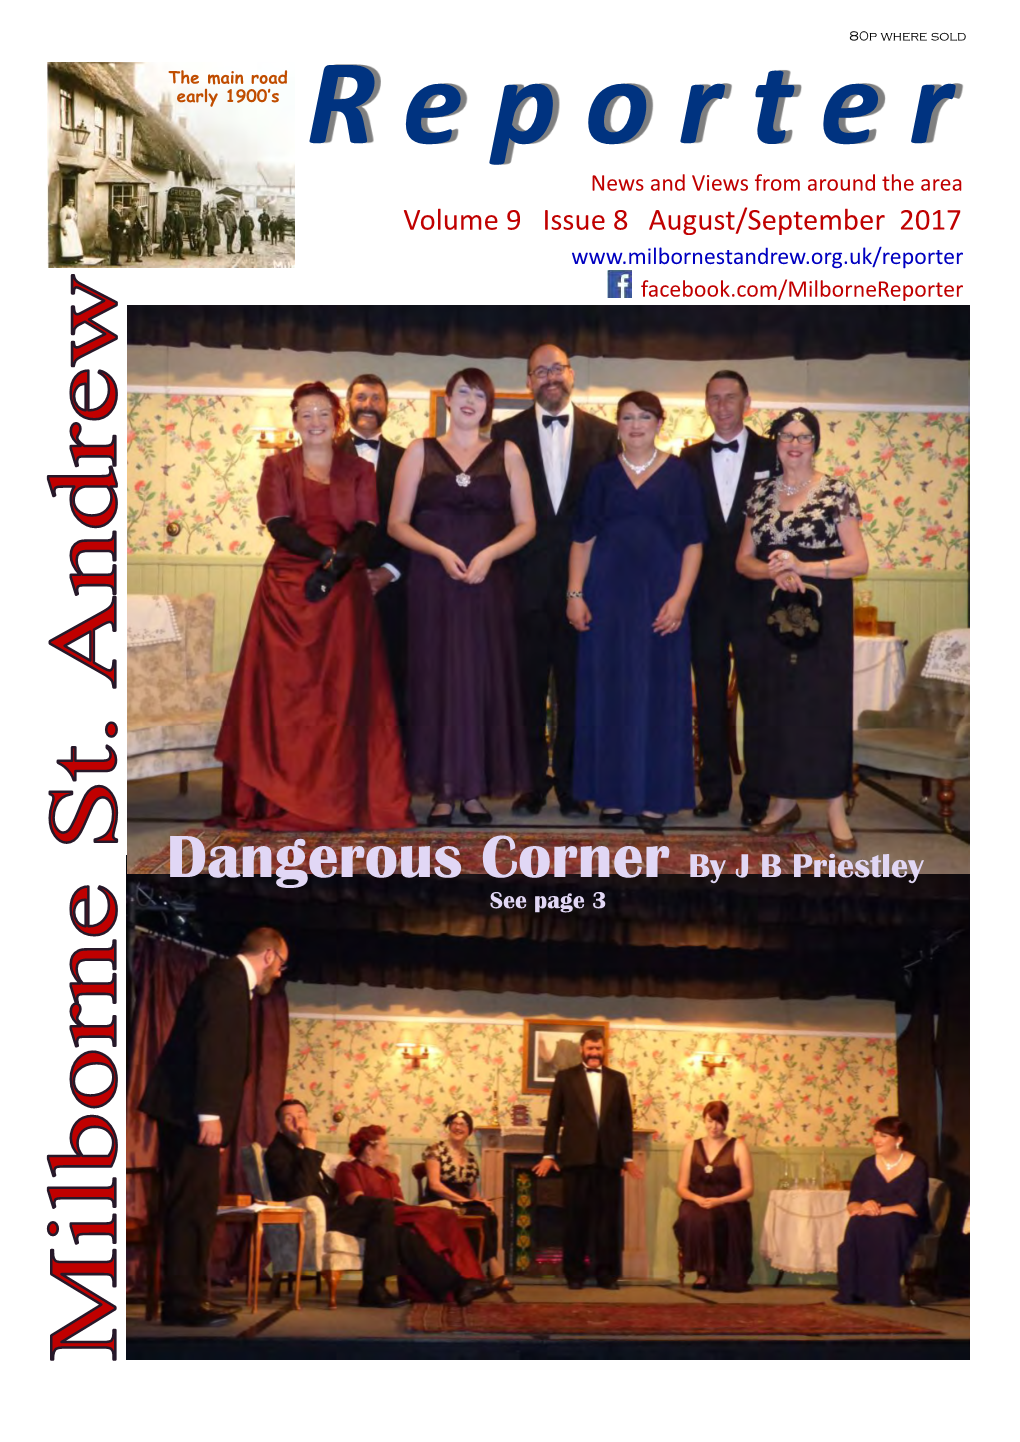 Dangerous Corner by J B Priestley See Page 3